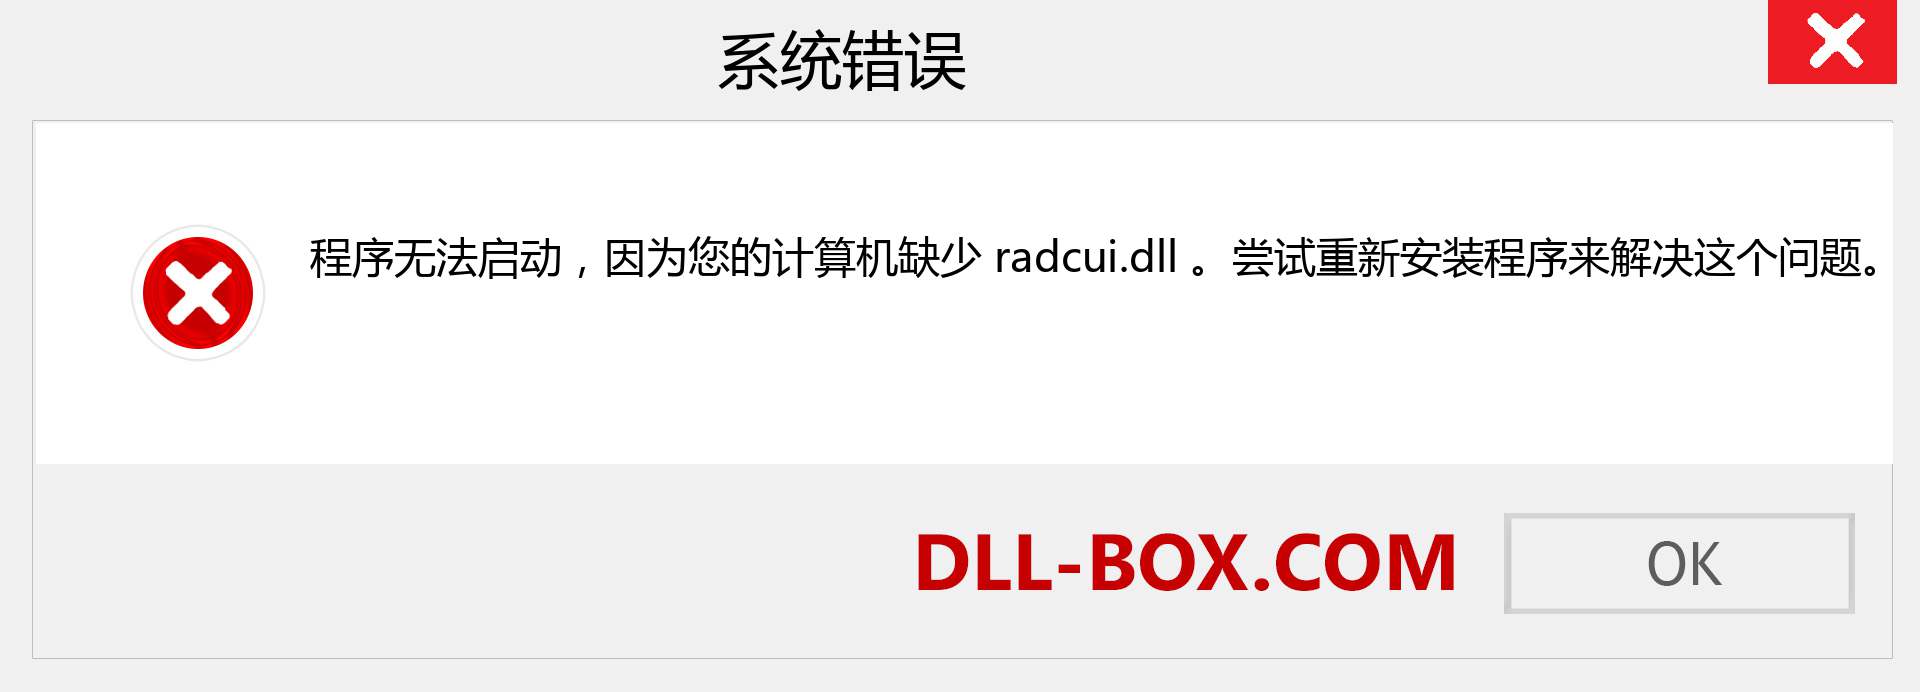 radcui.dll 文件丢失？。 适用于 Windows 7、8、10 的下载 - 修复 Windows、照片、图像上的 radcui dll 丢失错误